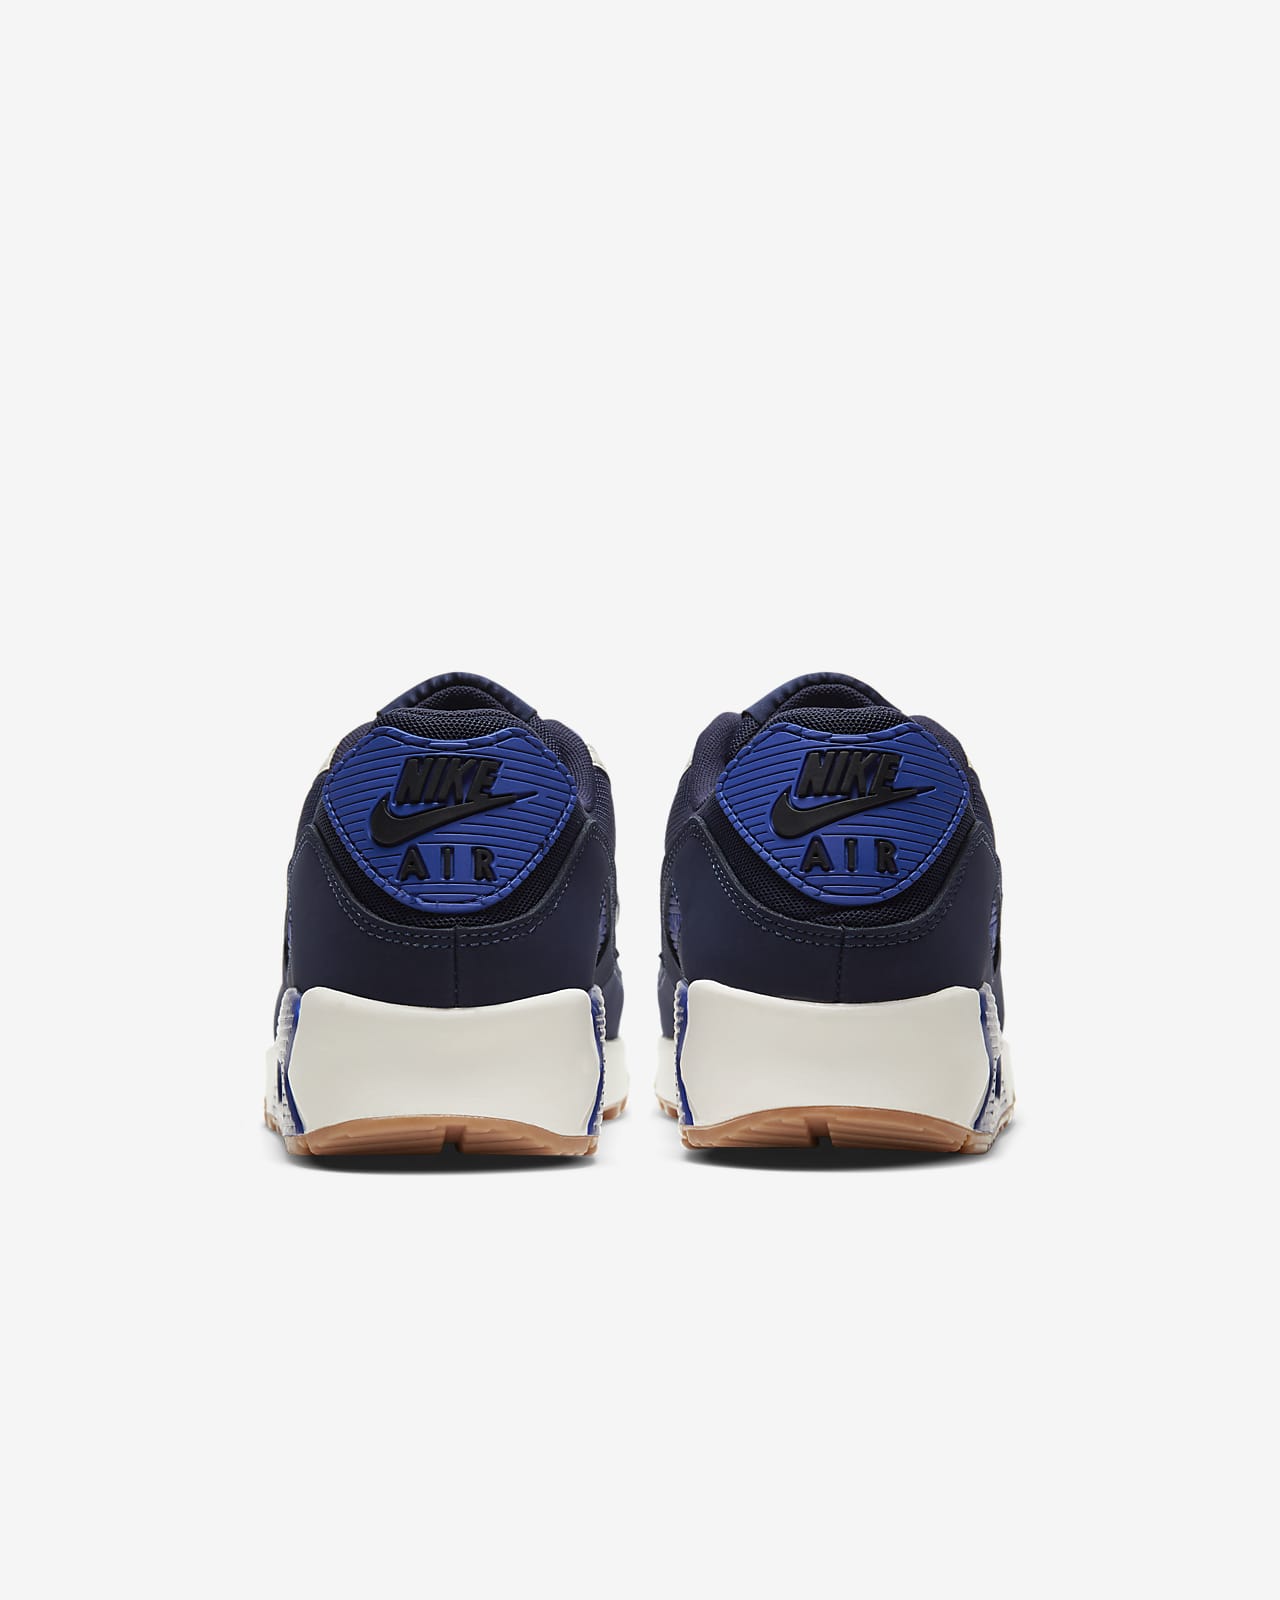 Air Max 90 Premium Men's Shoe. Nike ID